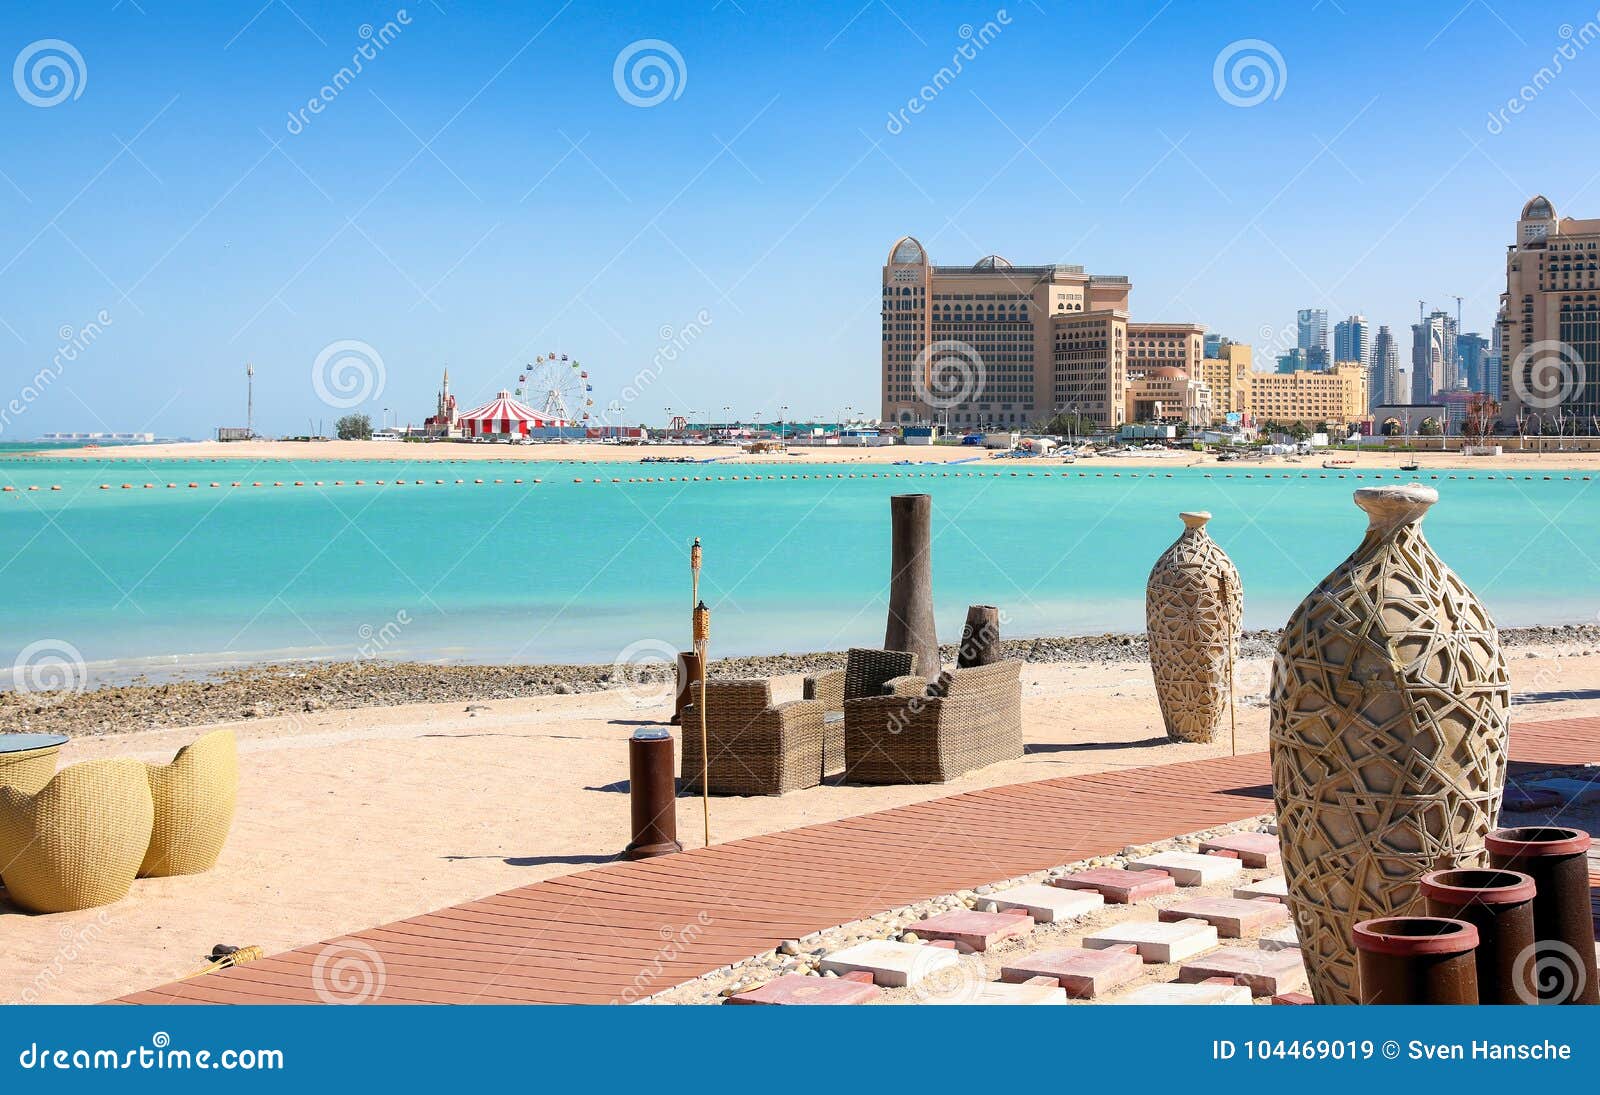 qatar plage